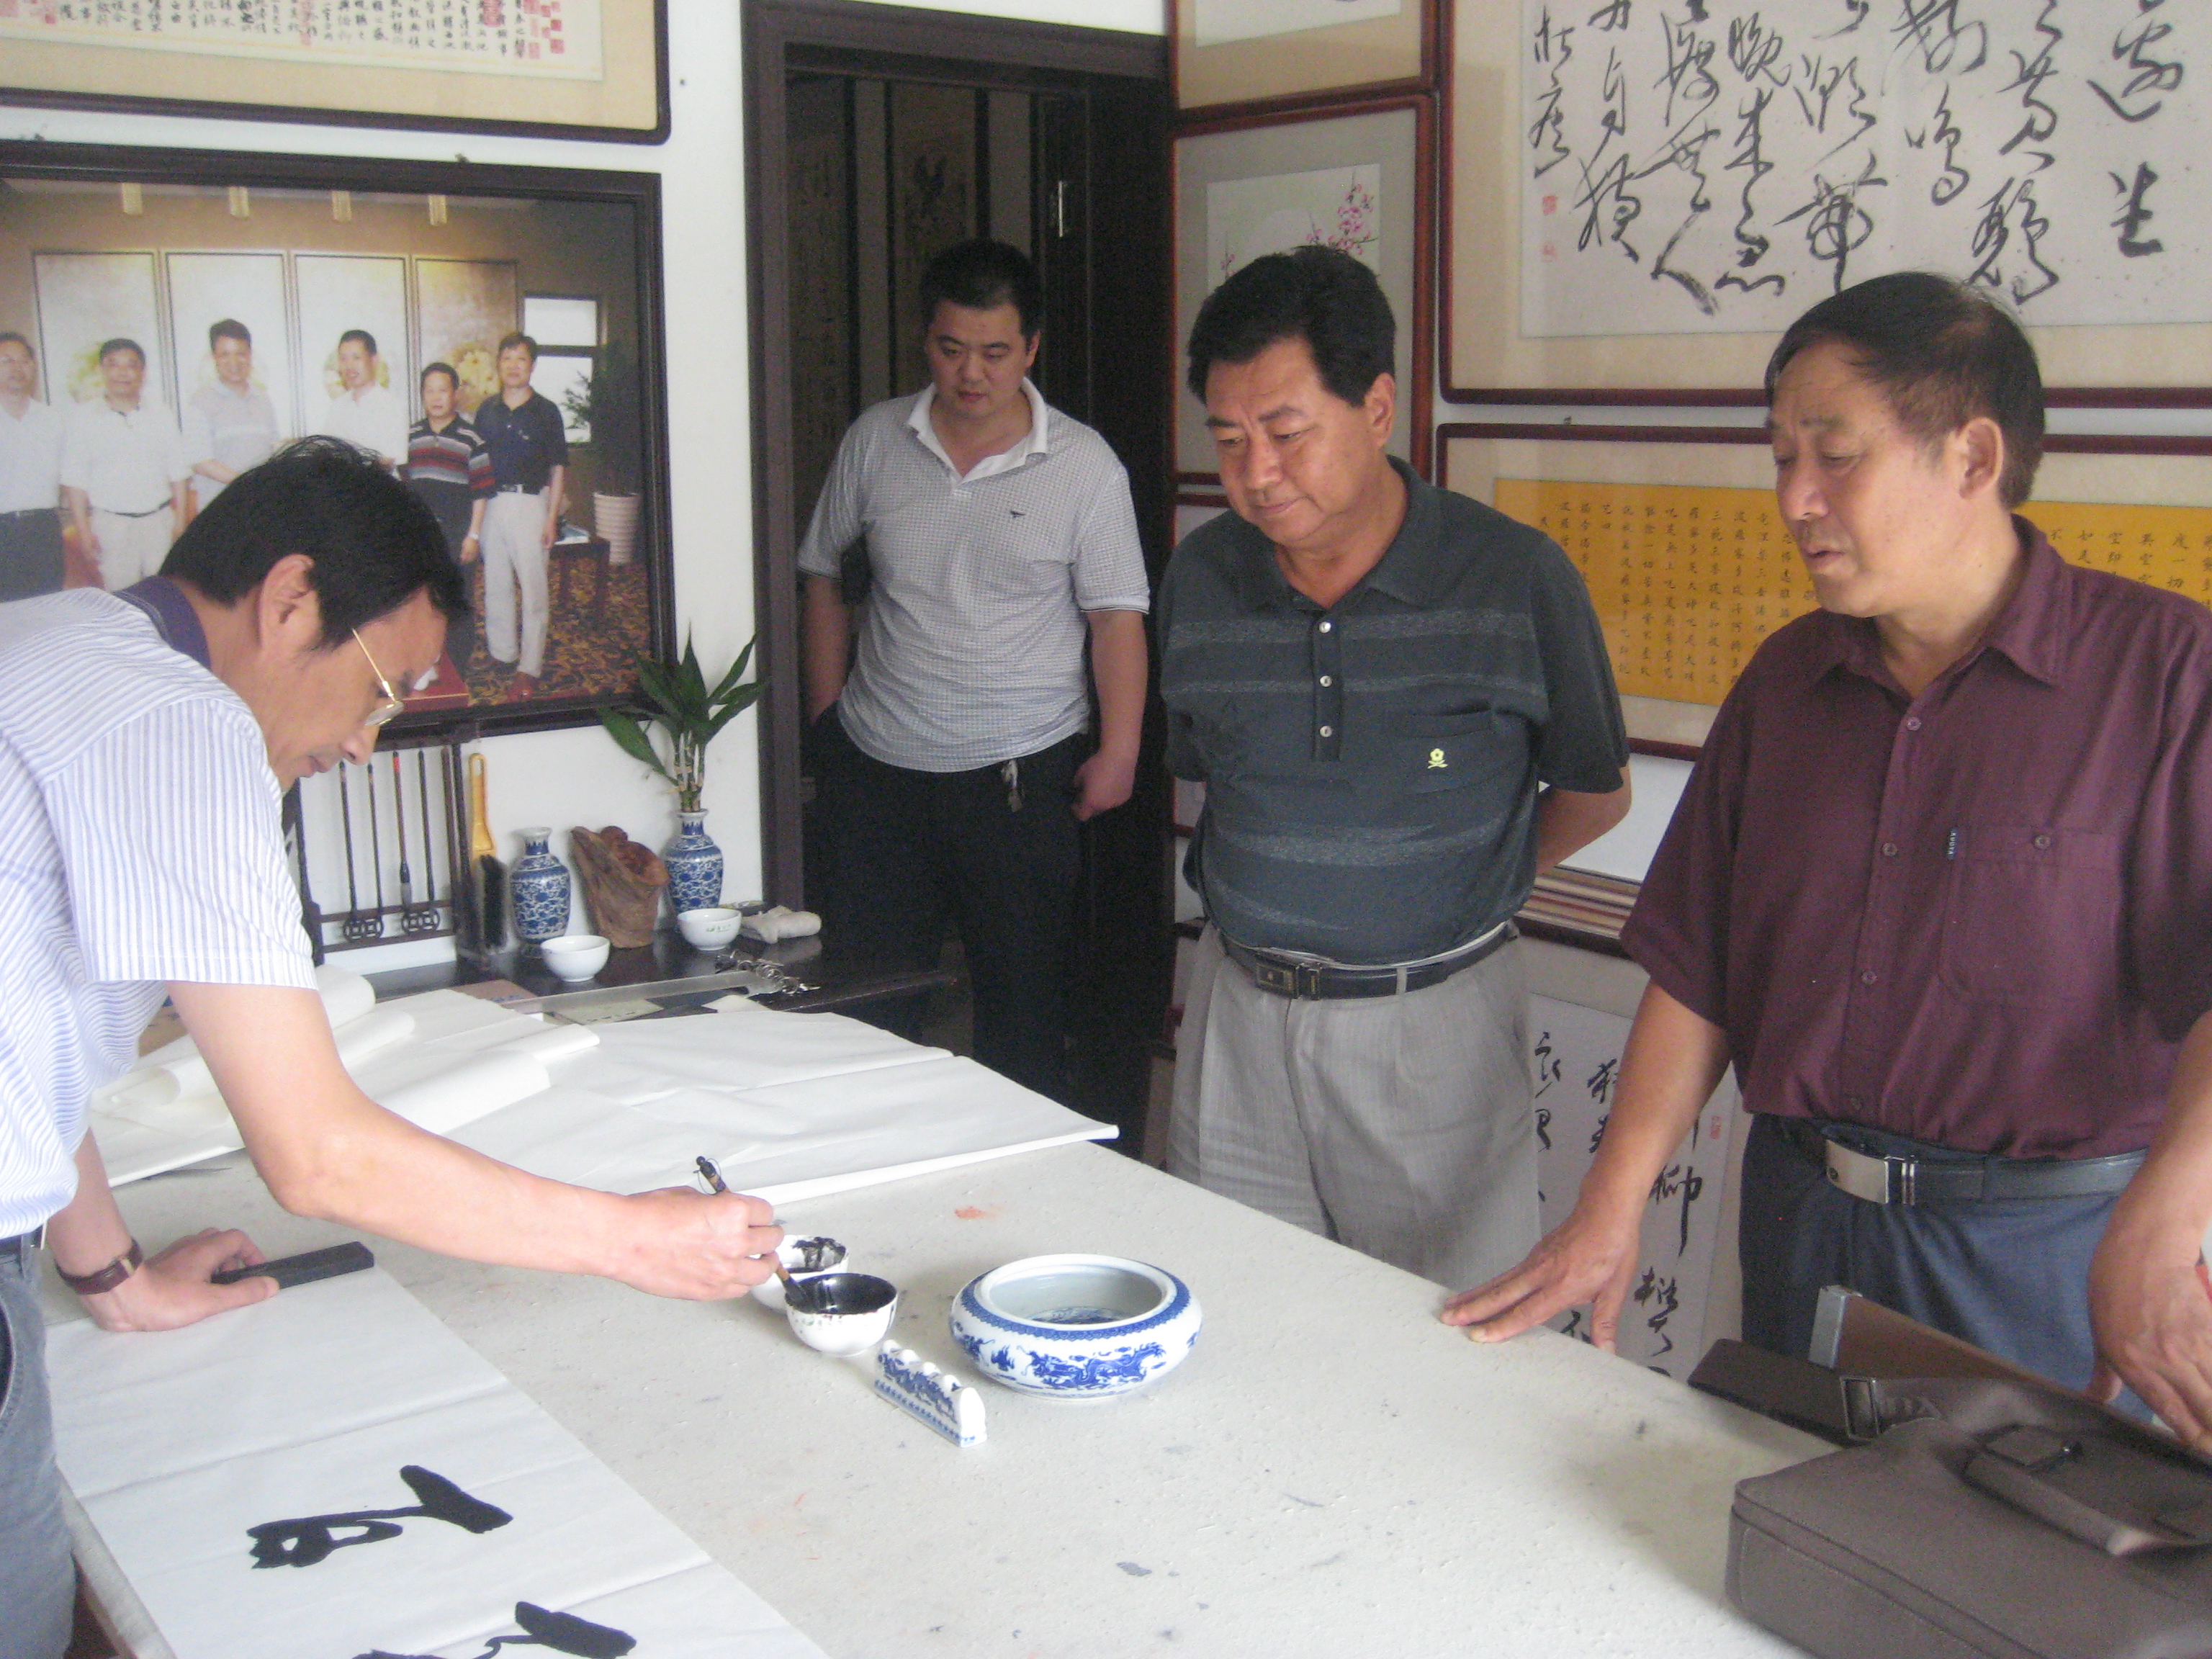 連雲港市委宣傳部副部長李鋒古在書畫社揮毫